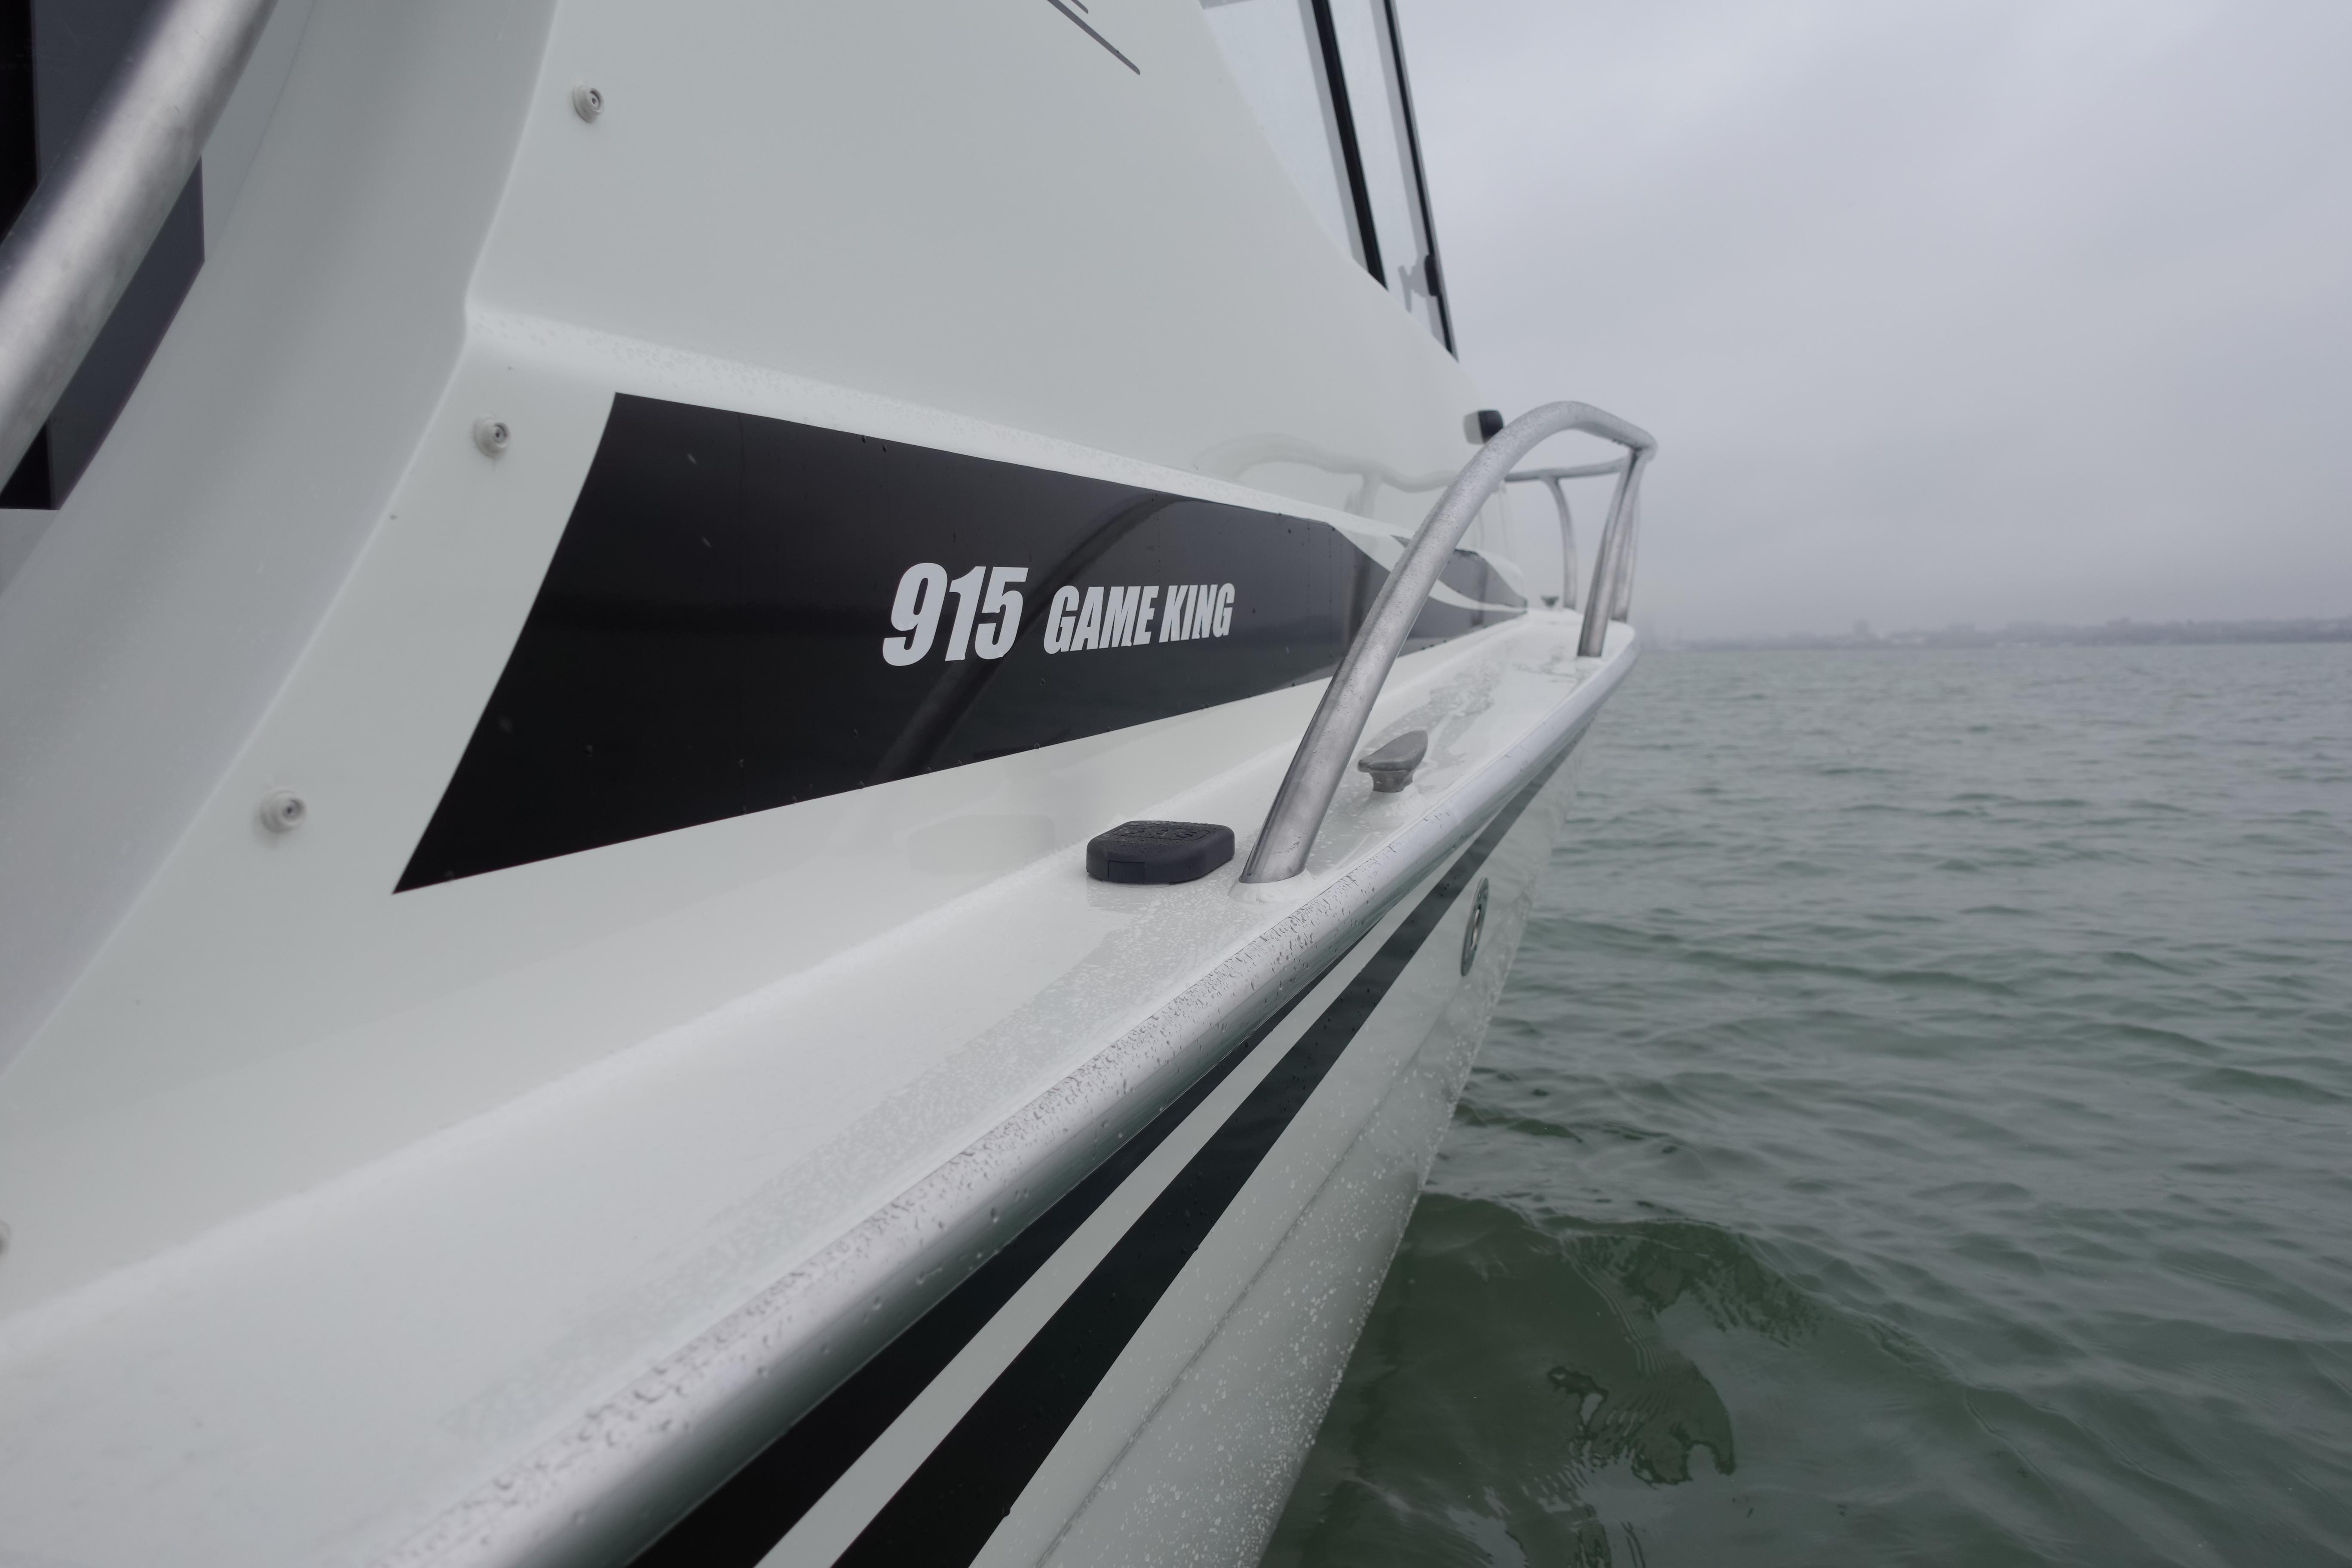 2024 Extreme Boats 915 Gameking 30' Aluminium Fish for sale - YachtWorld